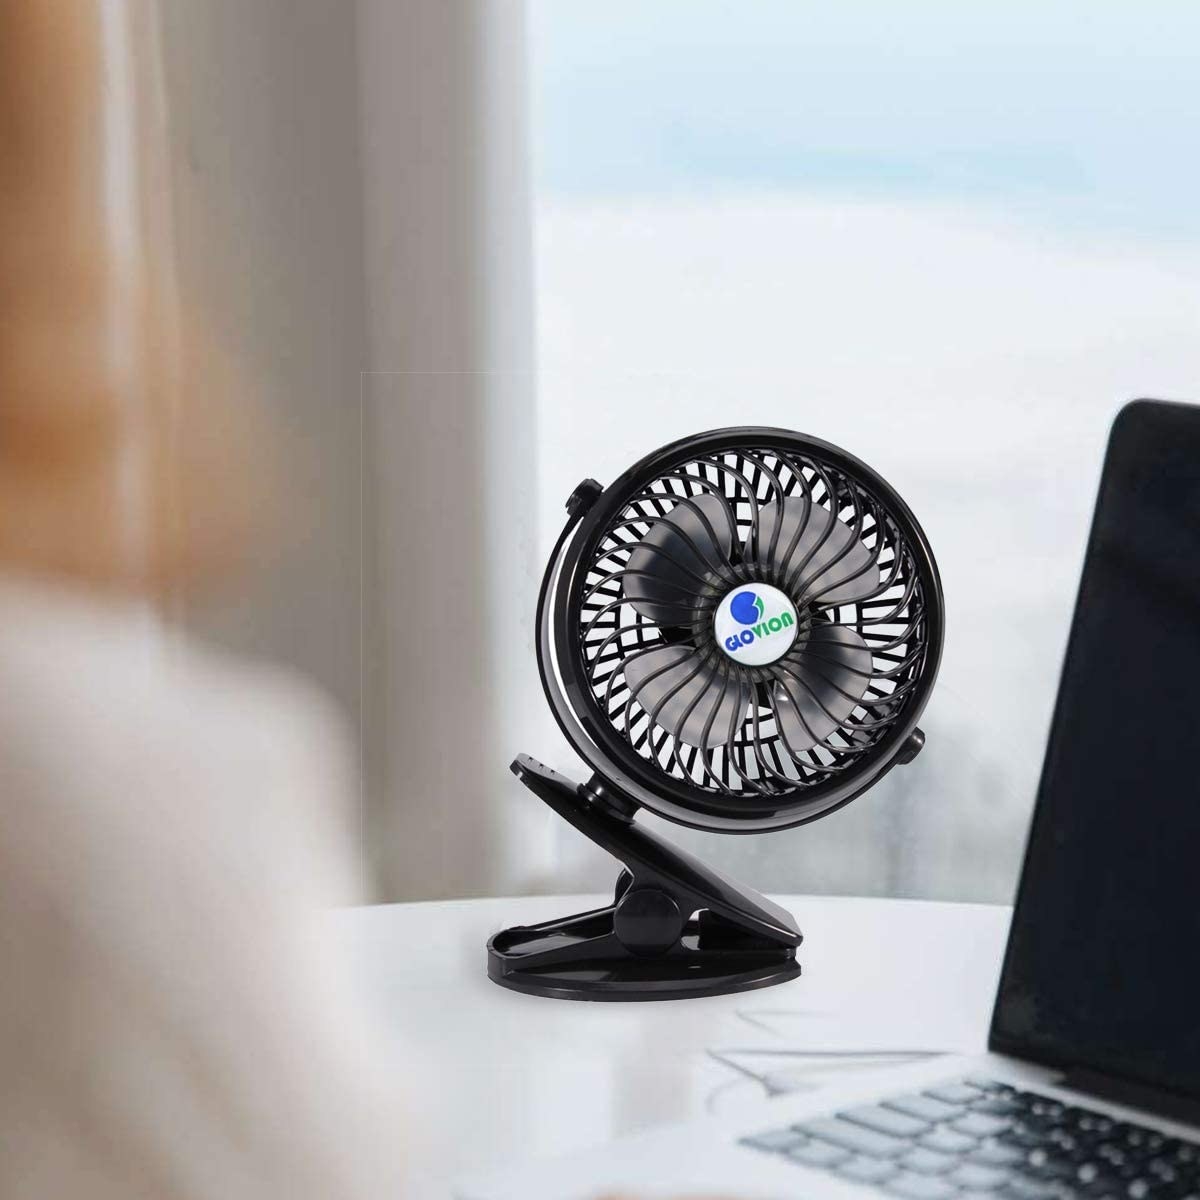 A small black desk fan